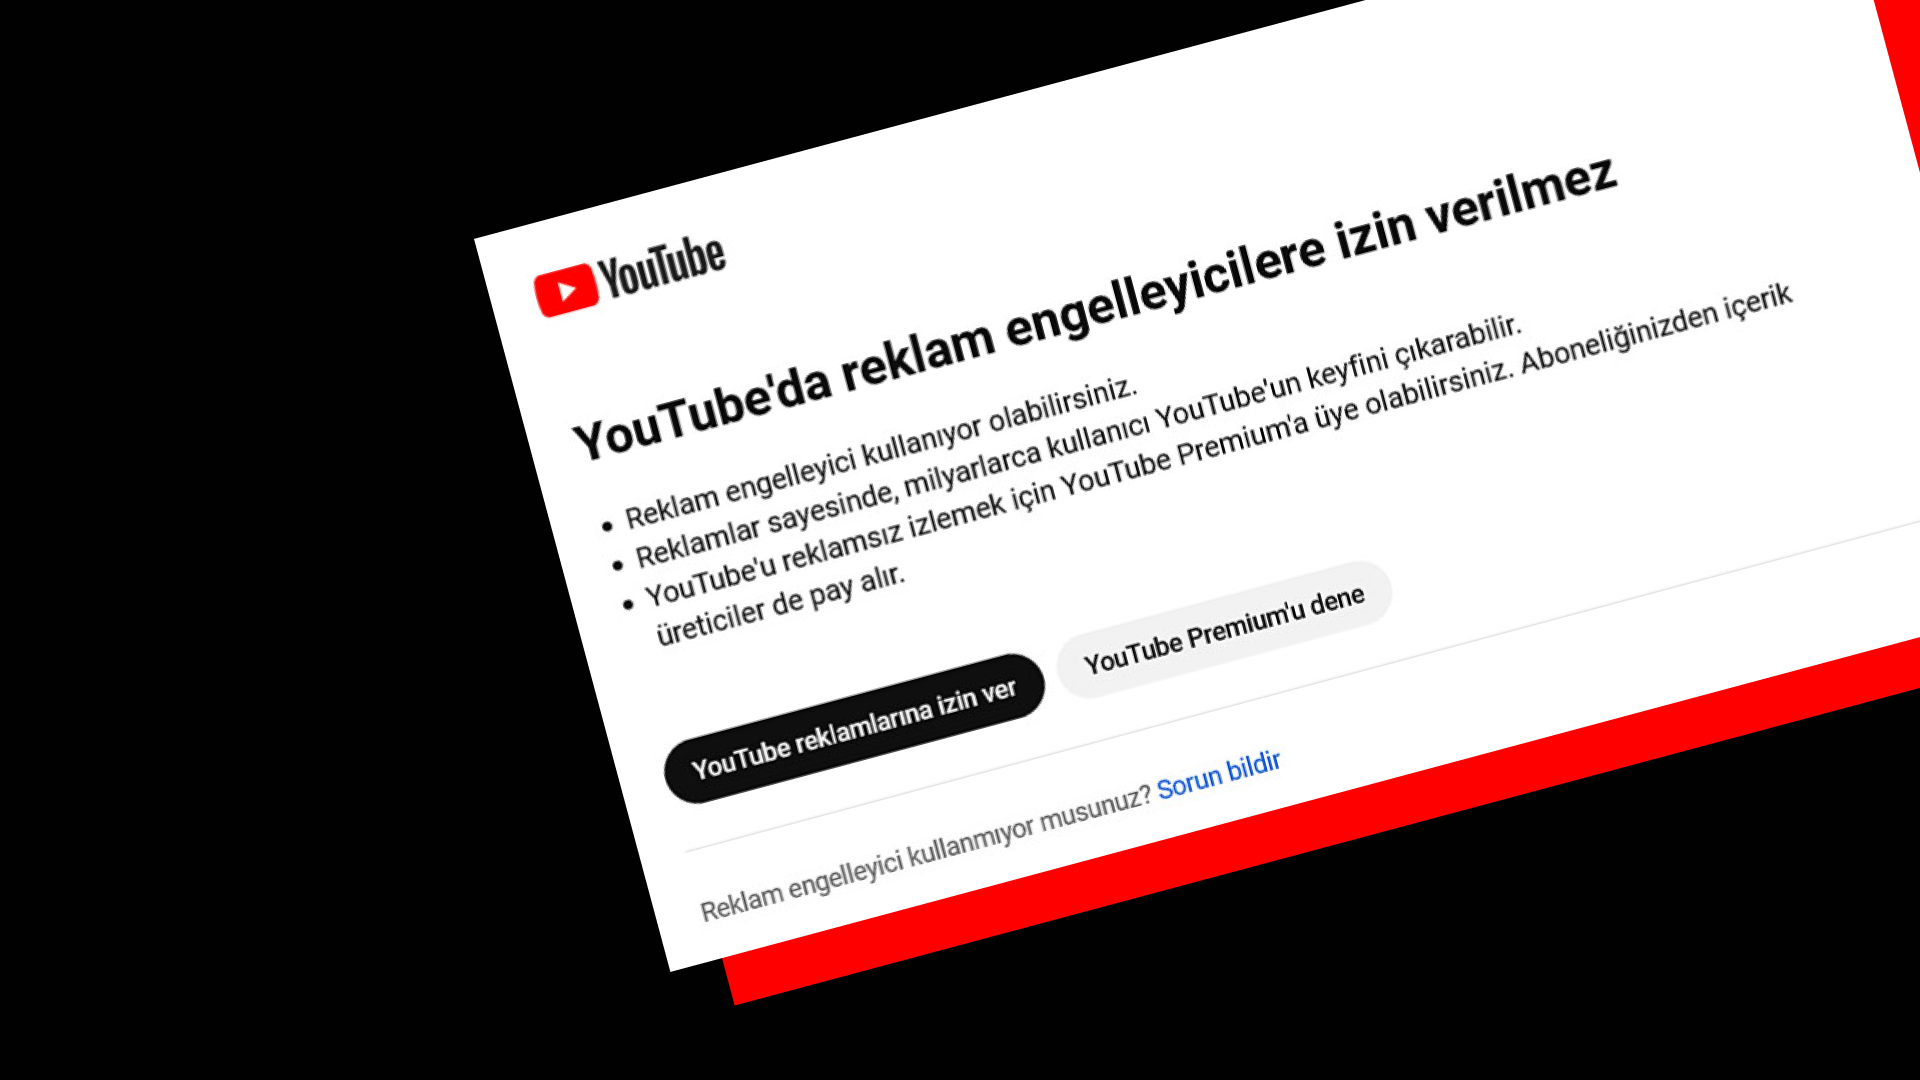 YouTube reklam engelleyici tespit sistemi İrlanda Veri Koruma Komisyonuna şikayet edildi